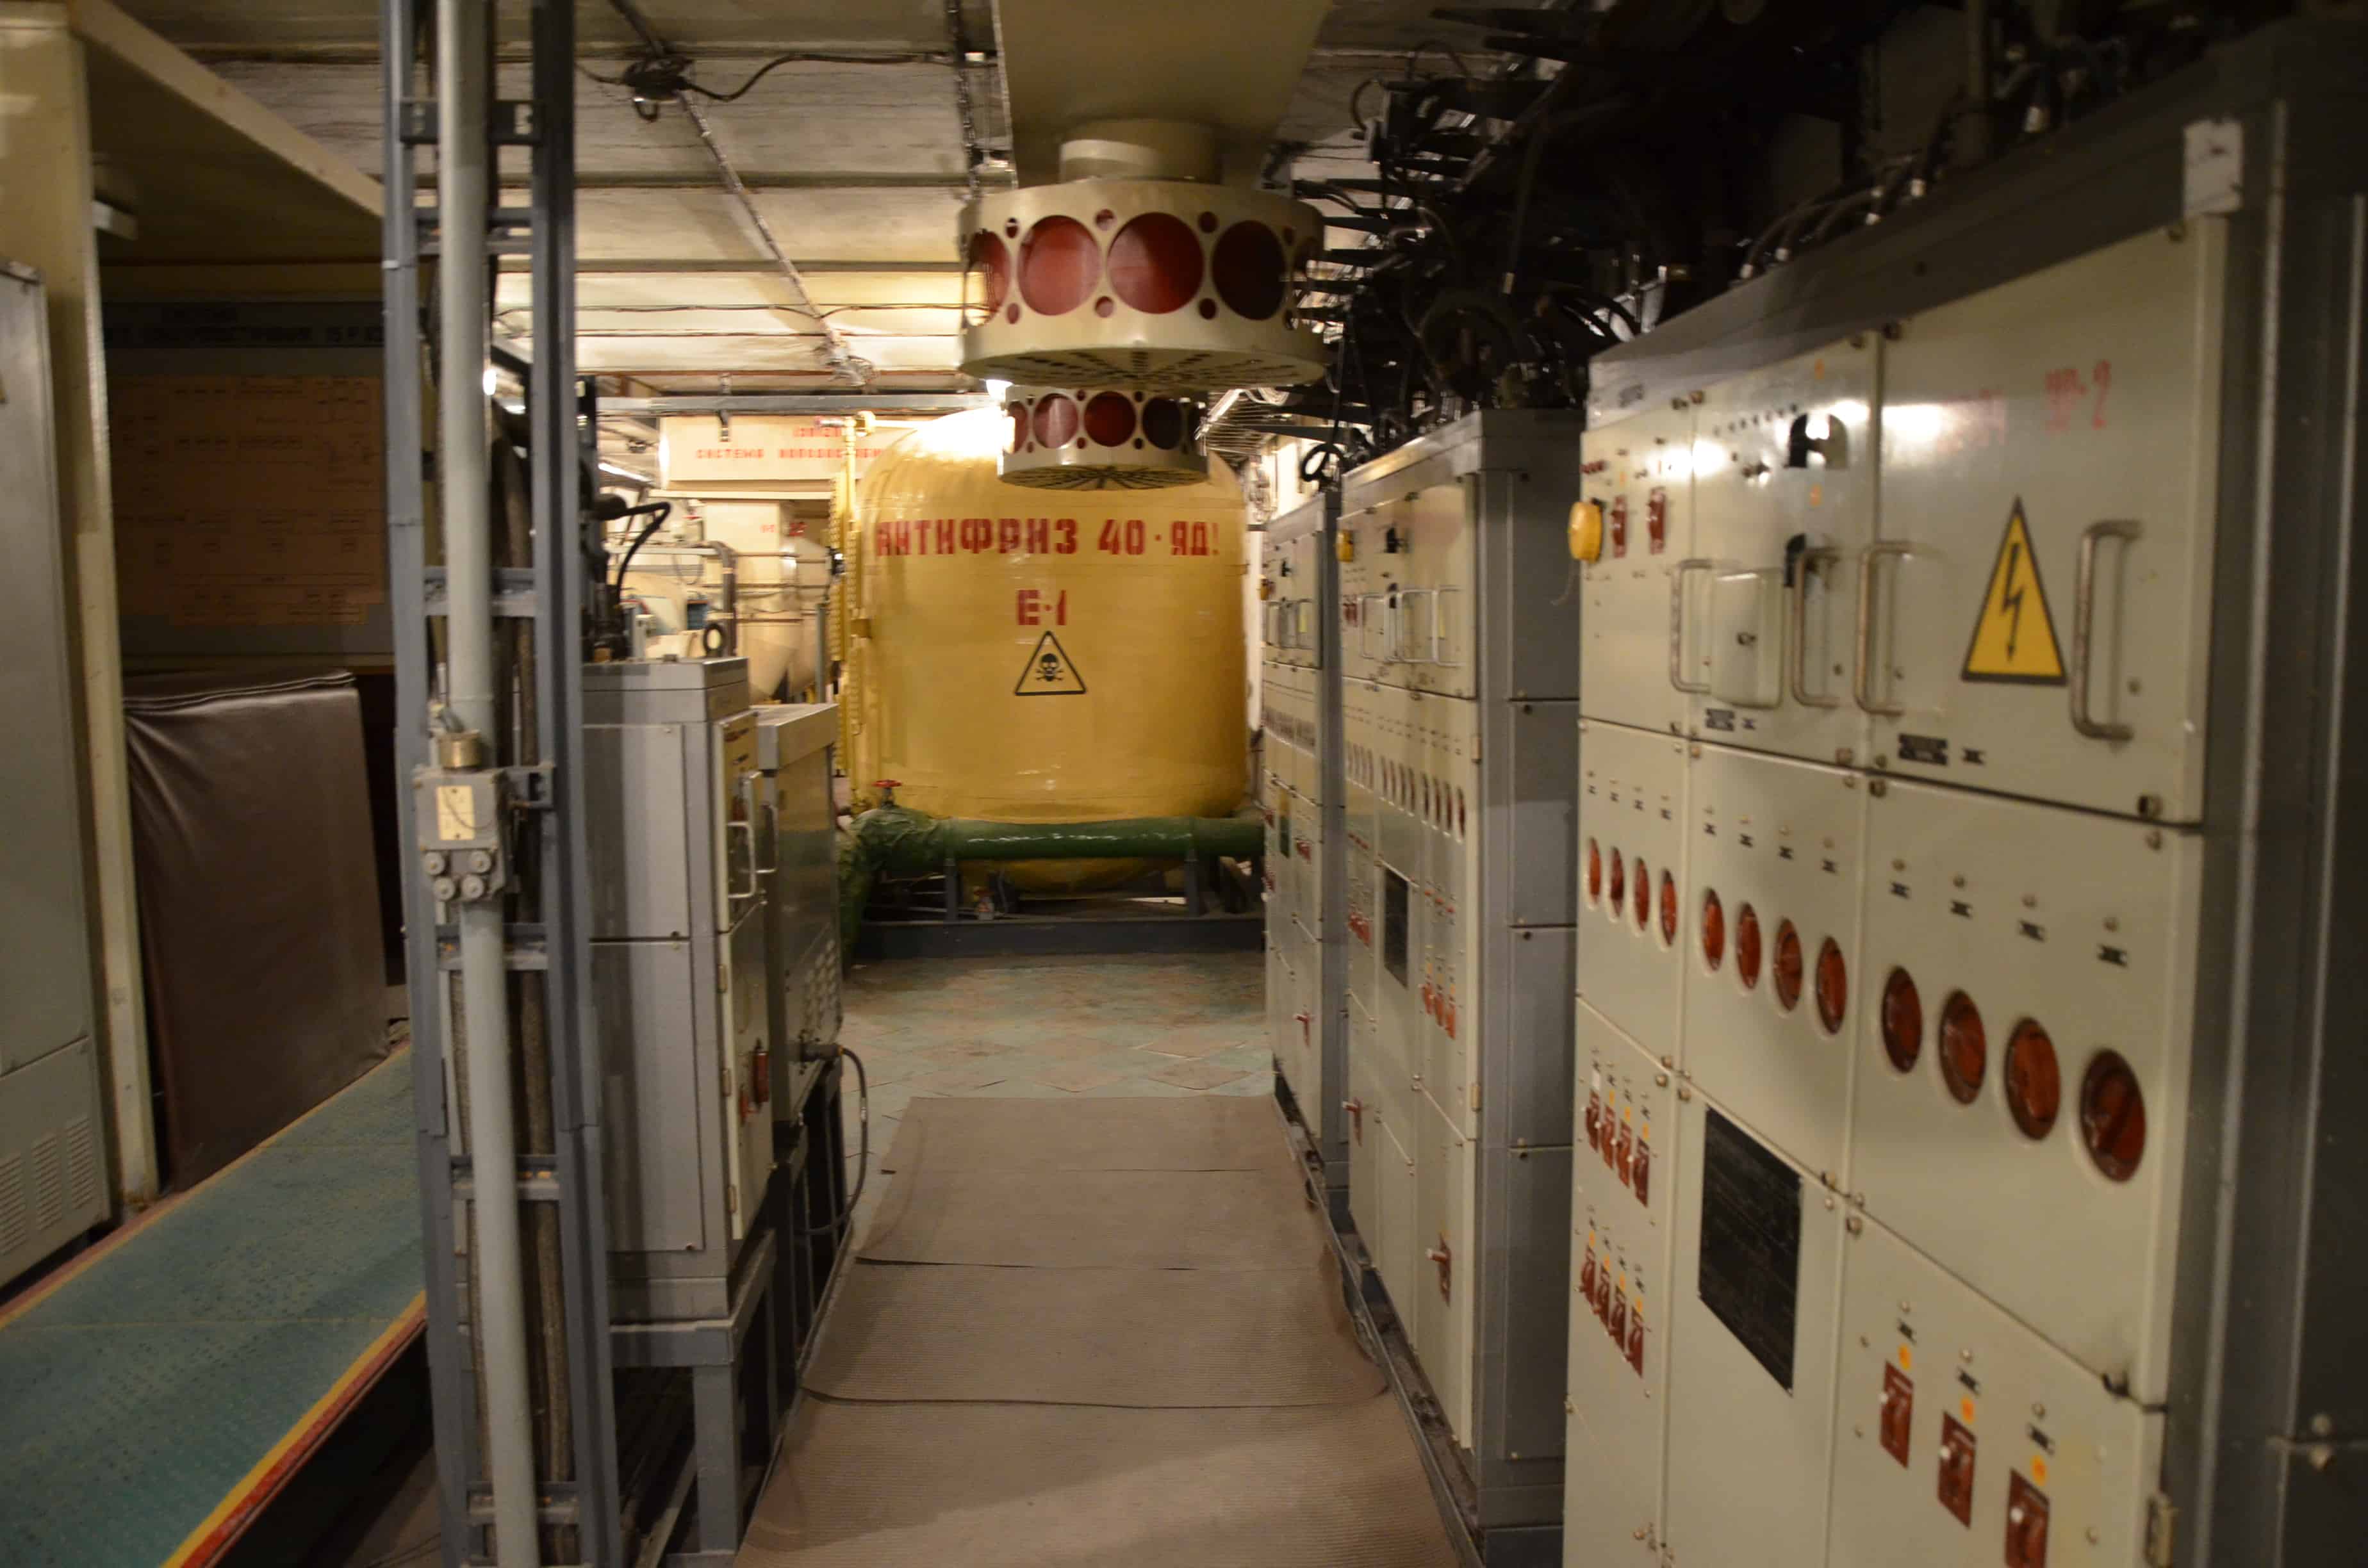 Refrigeration facility at Strategic Missile Forces Museum near Pobuzke, Ukraine